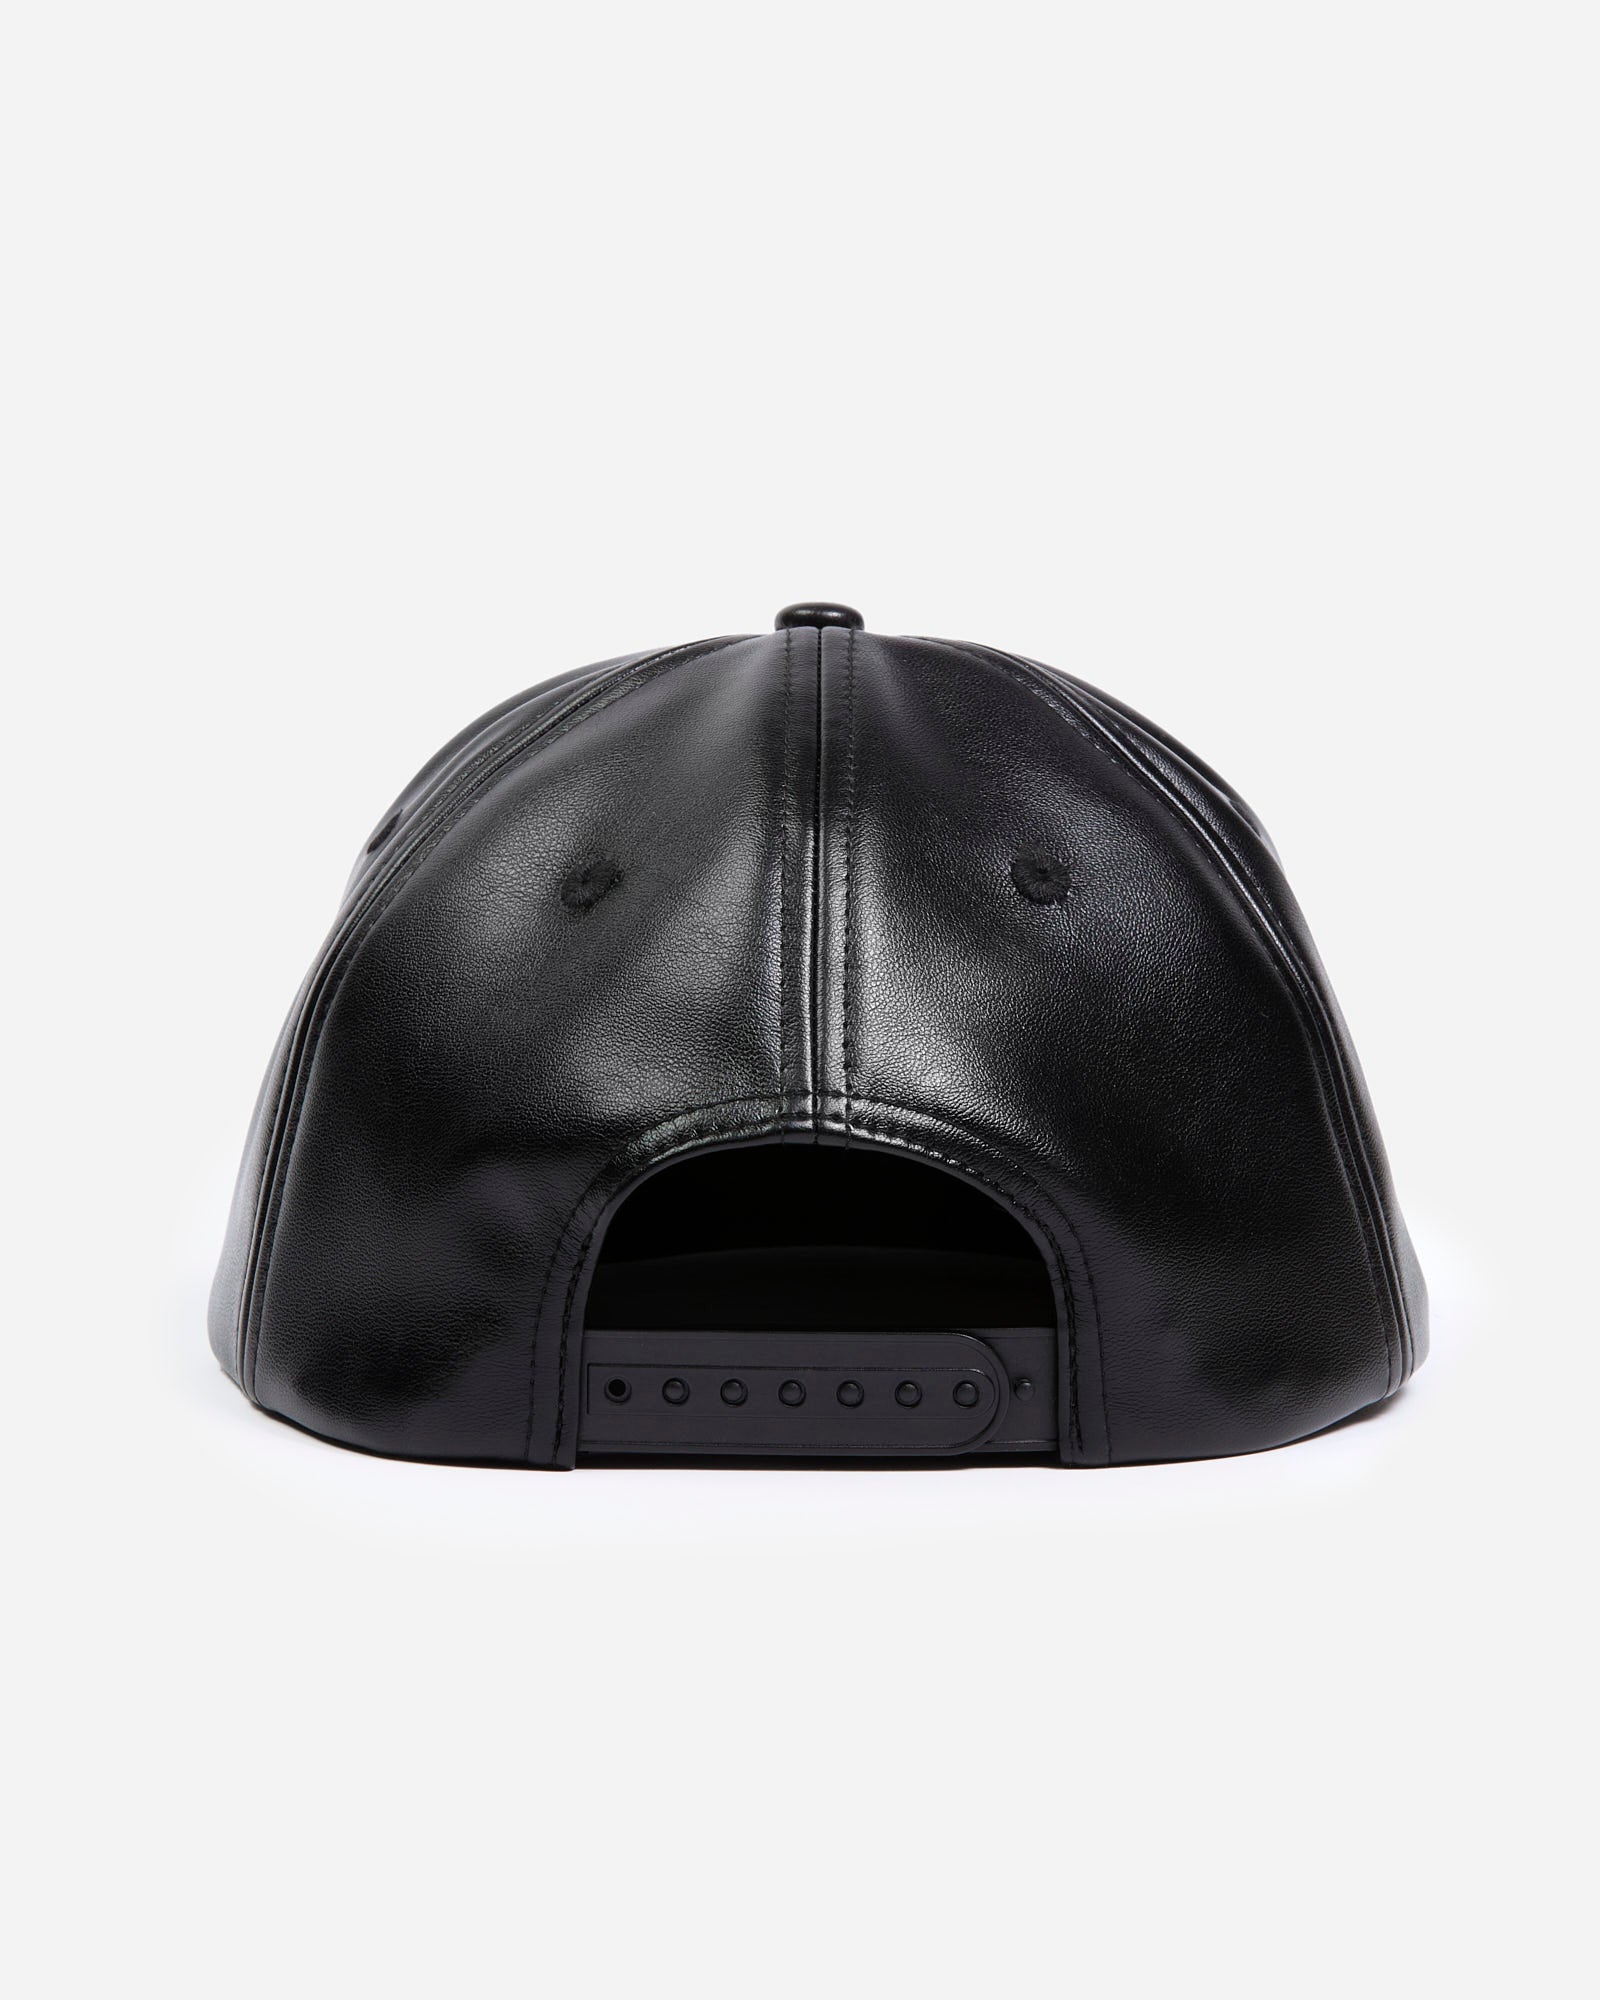 ATCQ Faux Leather Black Hat